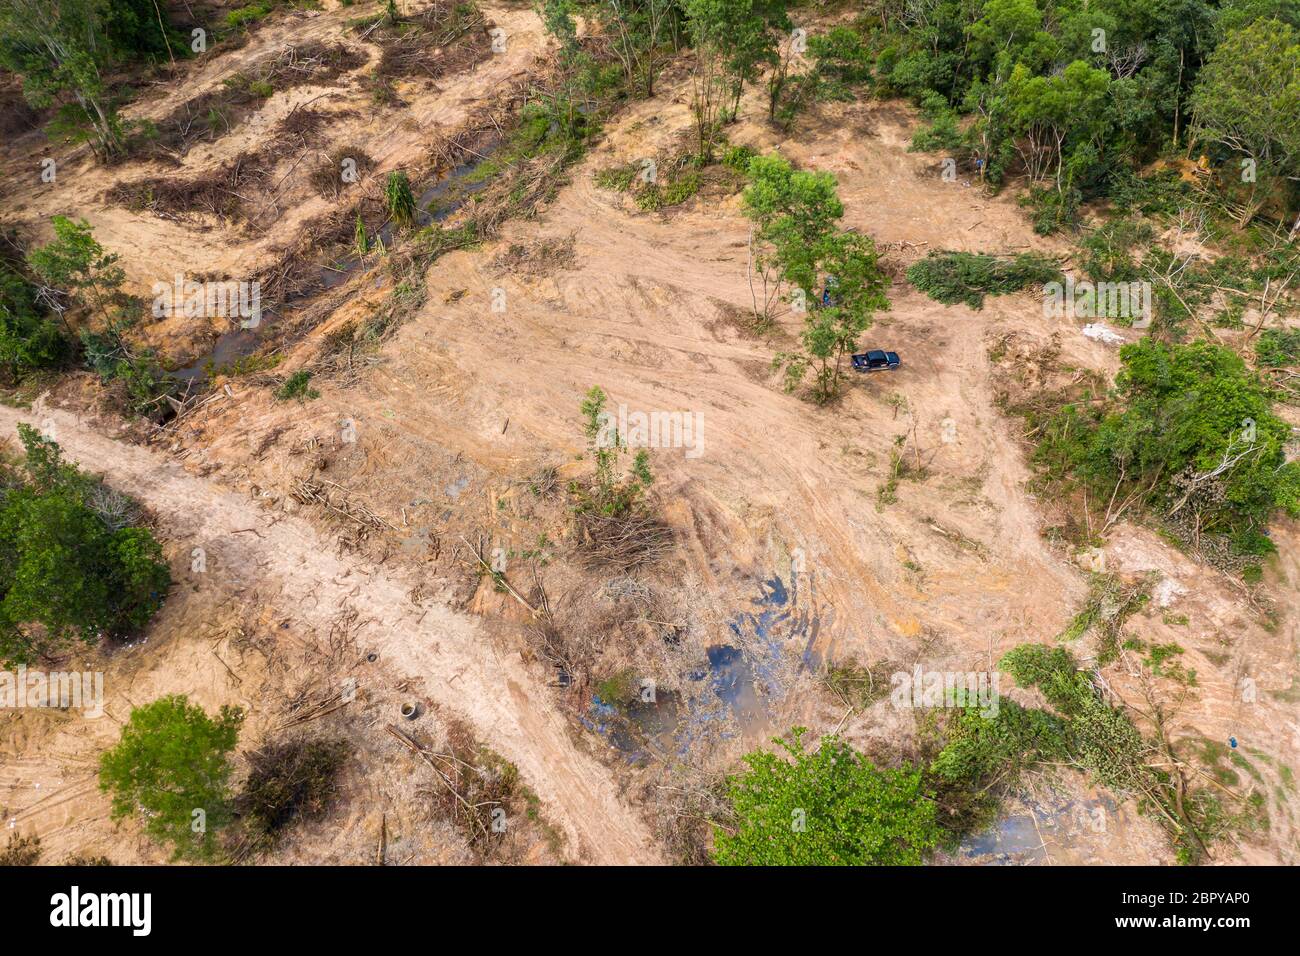 Vue aérienne par drone des opérons forestiers et de la déforestation active d'une forêt tropicale contribuant à la destruction de l'habitat et du climat artificiel chan Banque D'Images